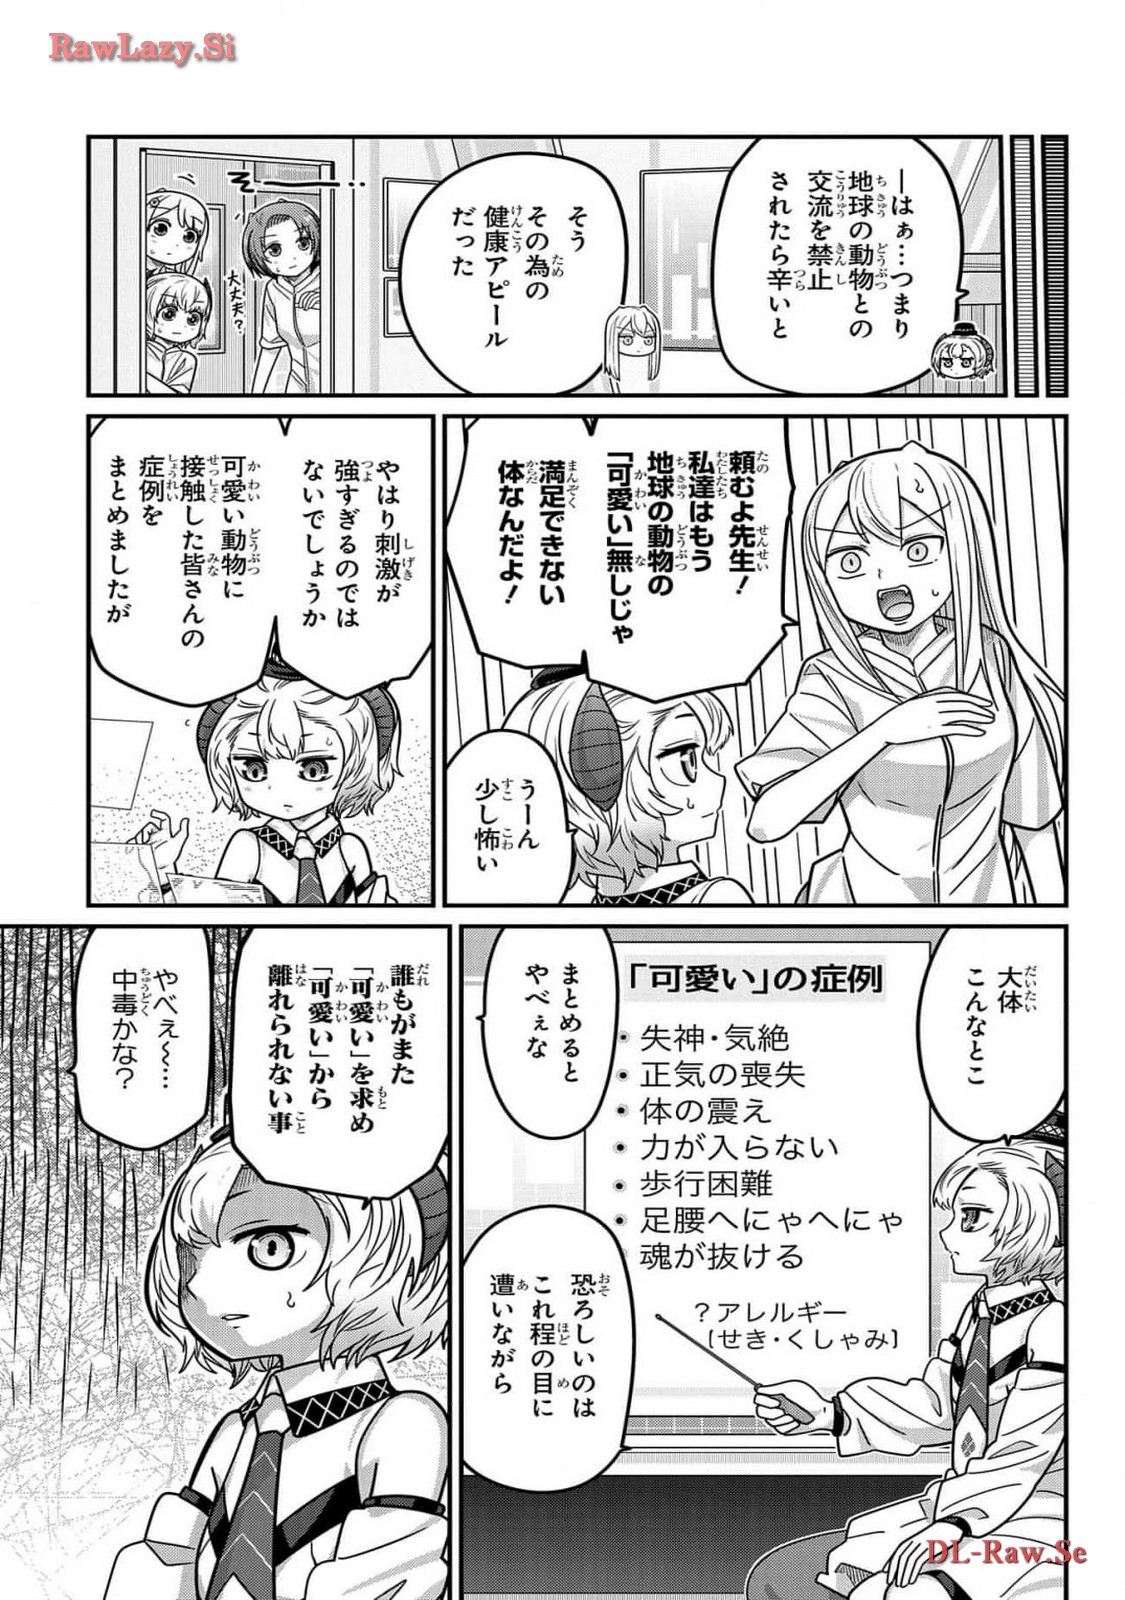 Kawaisugi Crisis - Chapter 107 - Page 9